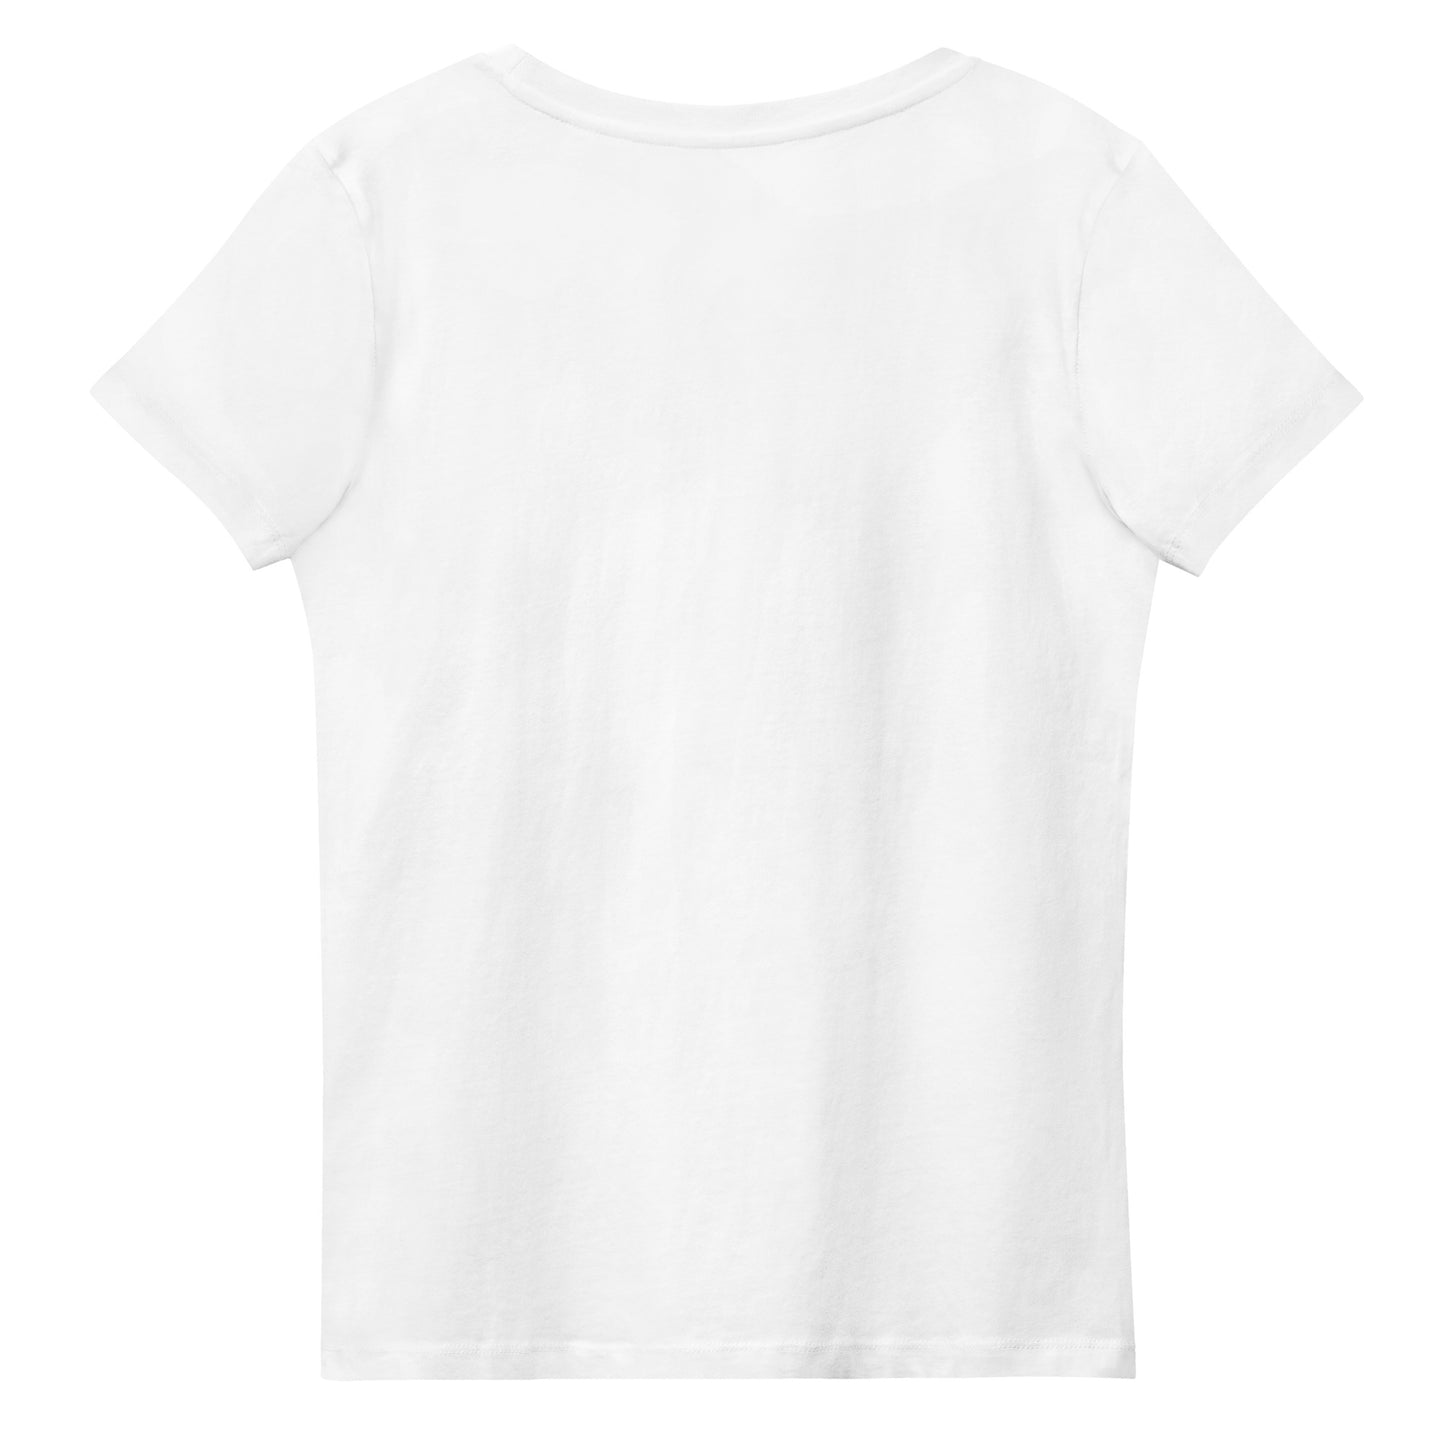 keskisormi naisten vaatteet netistä t-paita edullinen laadukas klarna  laskulle